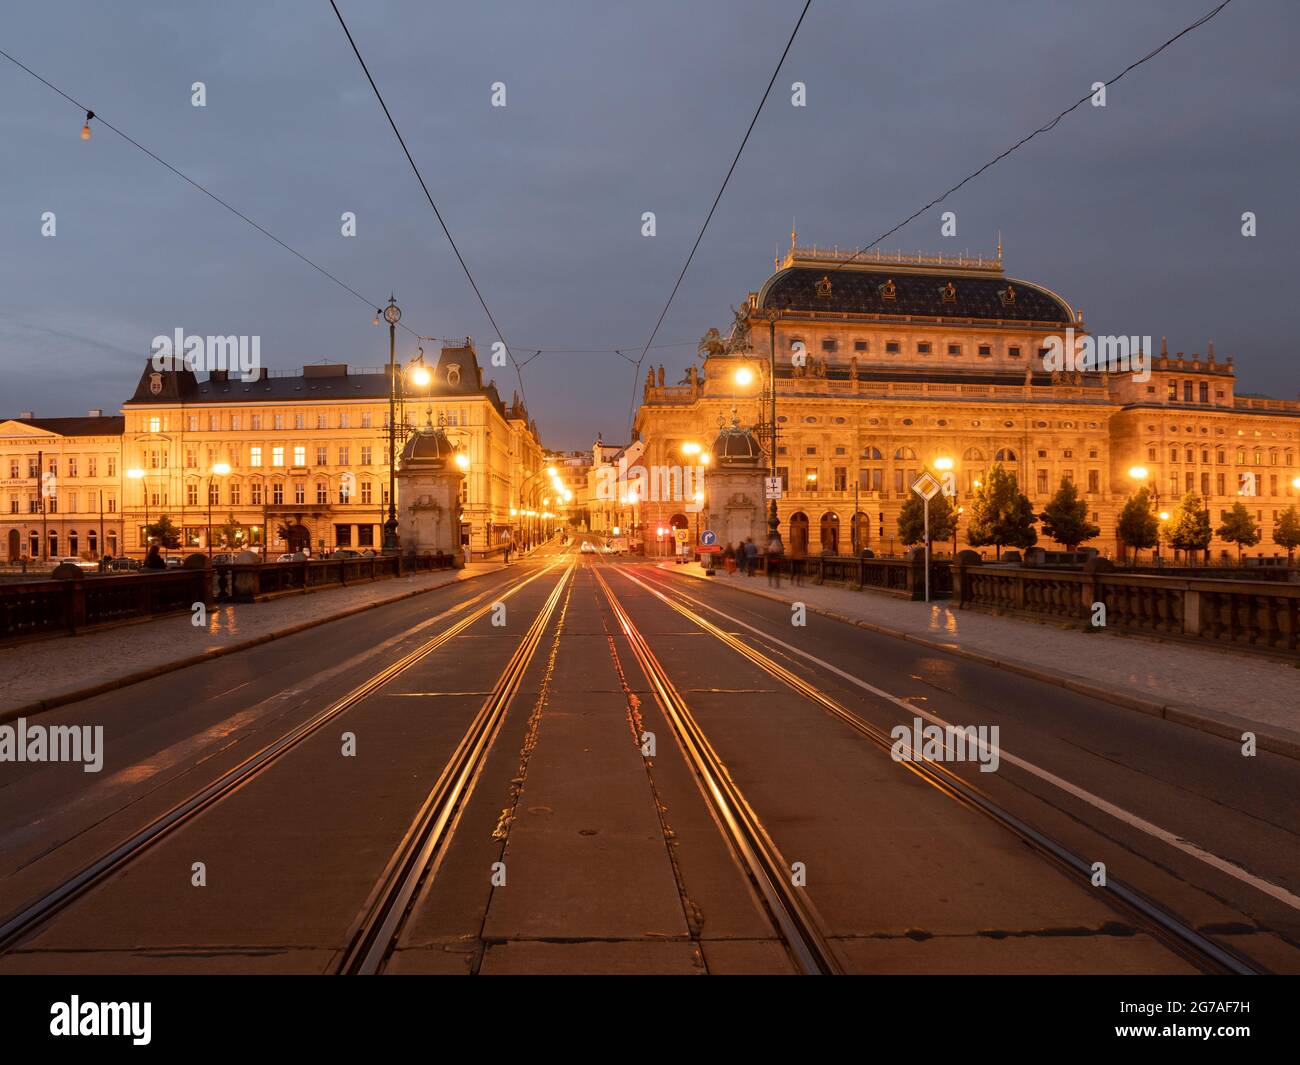 Pont de la légion la plupart des Legii et Narodni Divadlo Théâtre national à Prague, République Tchèque illuminés la nuit Banque D'Images